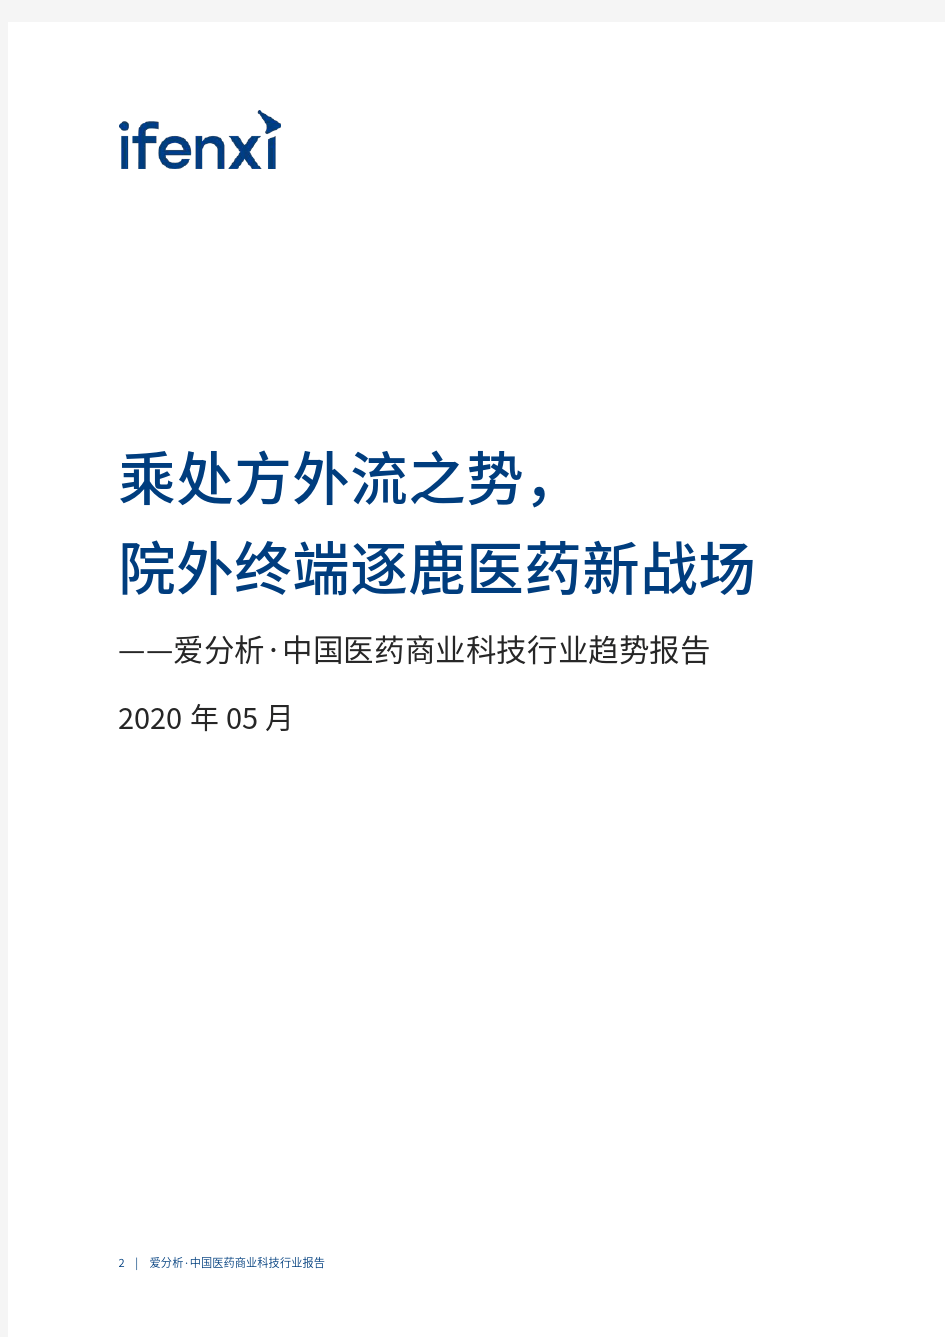 【精品报告】爱分析-中国医药商业科技行业趋势报告-2020.05-55页